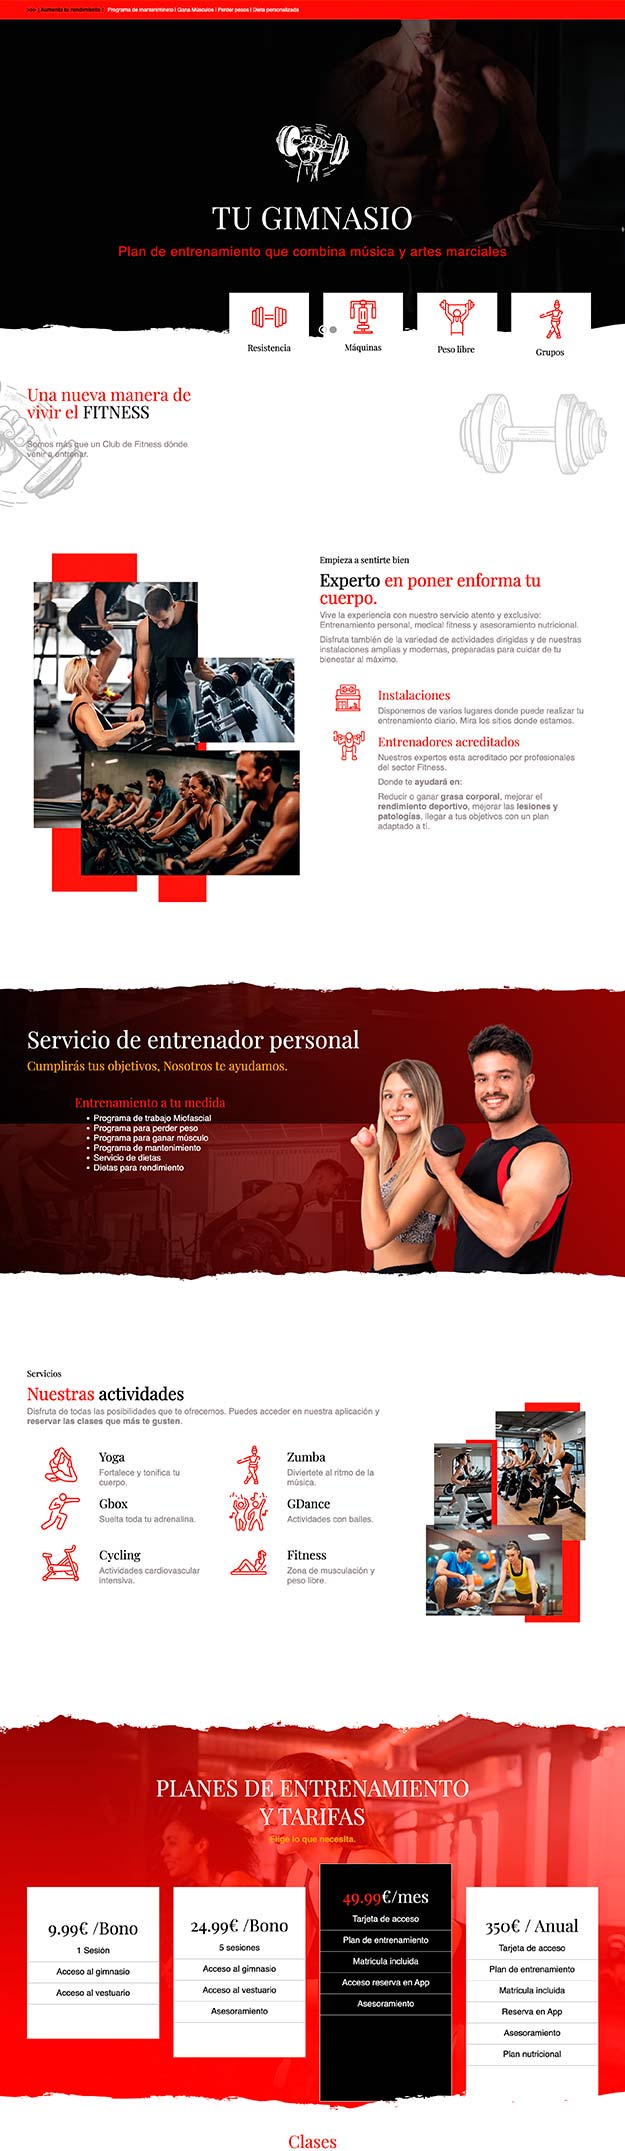 Plantilla web para Gym Ginmasio Gratis Niviweb Wordpress